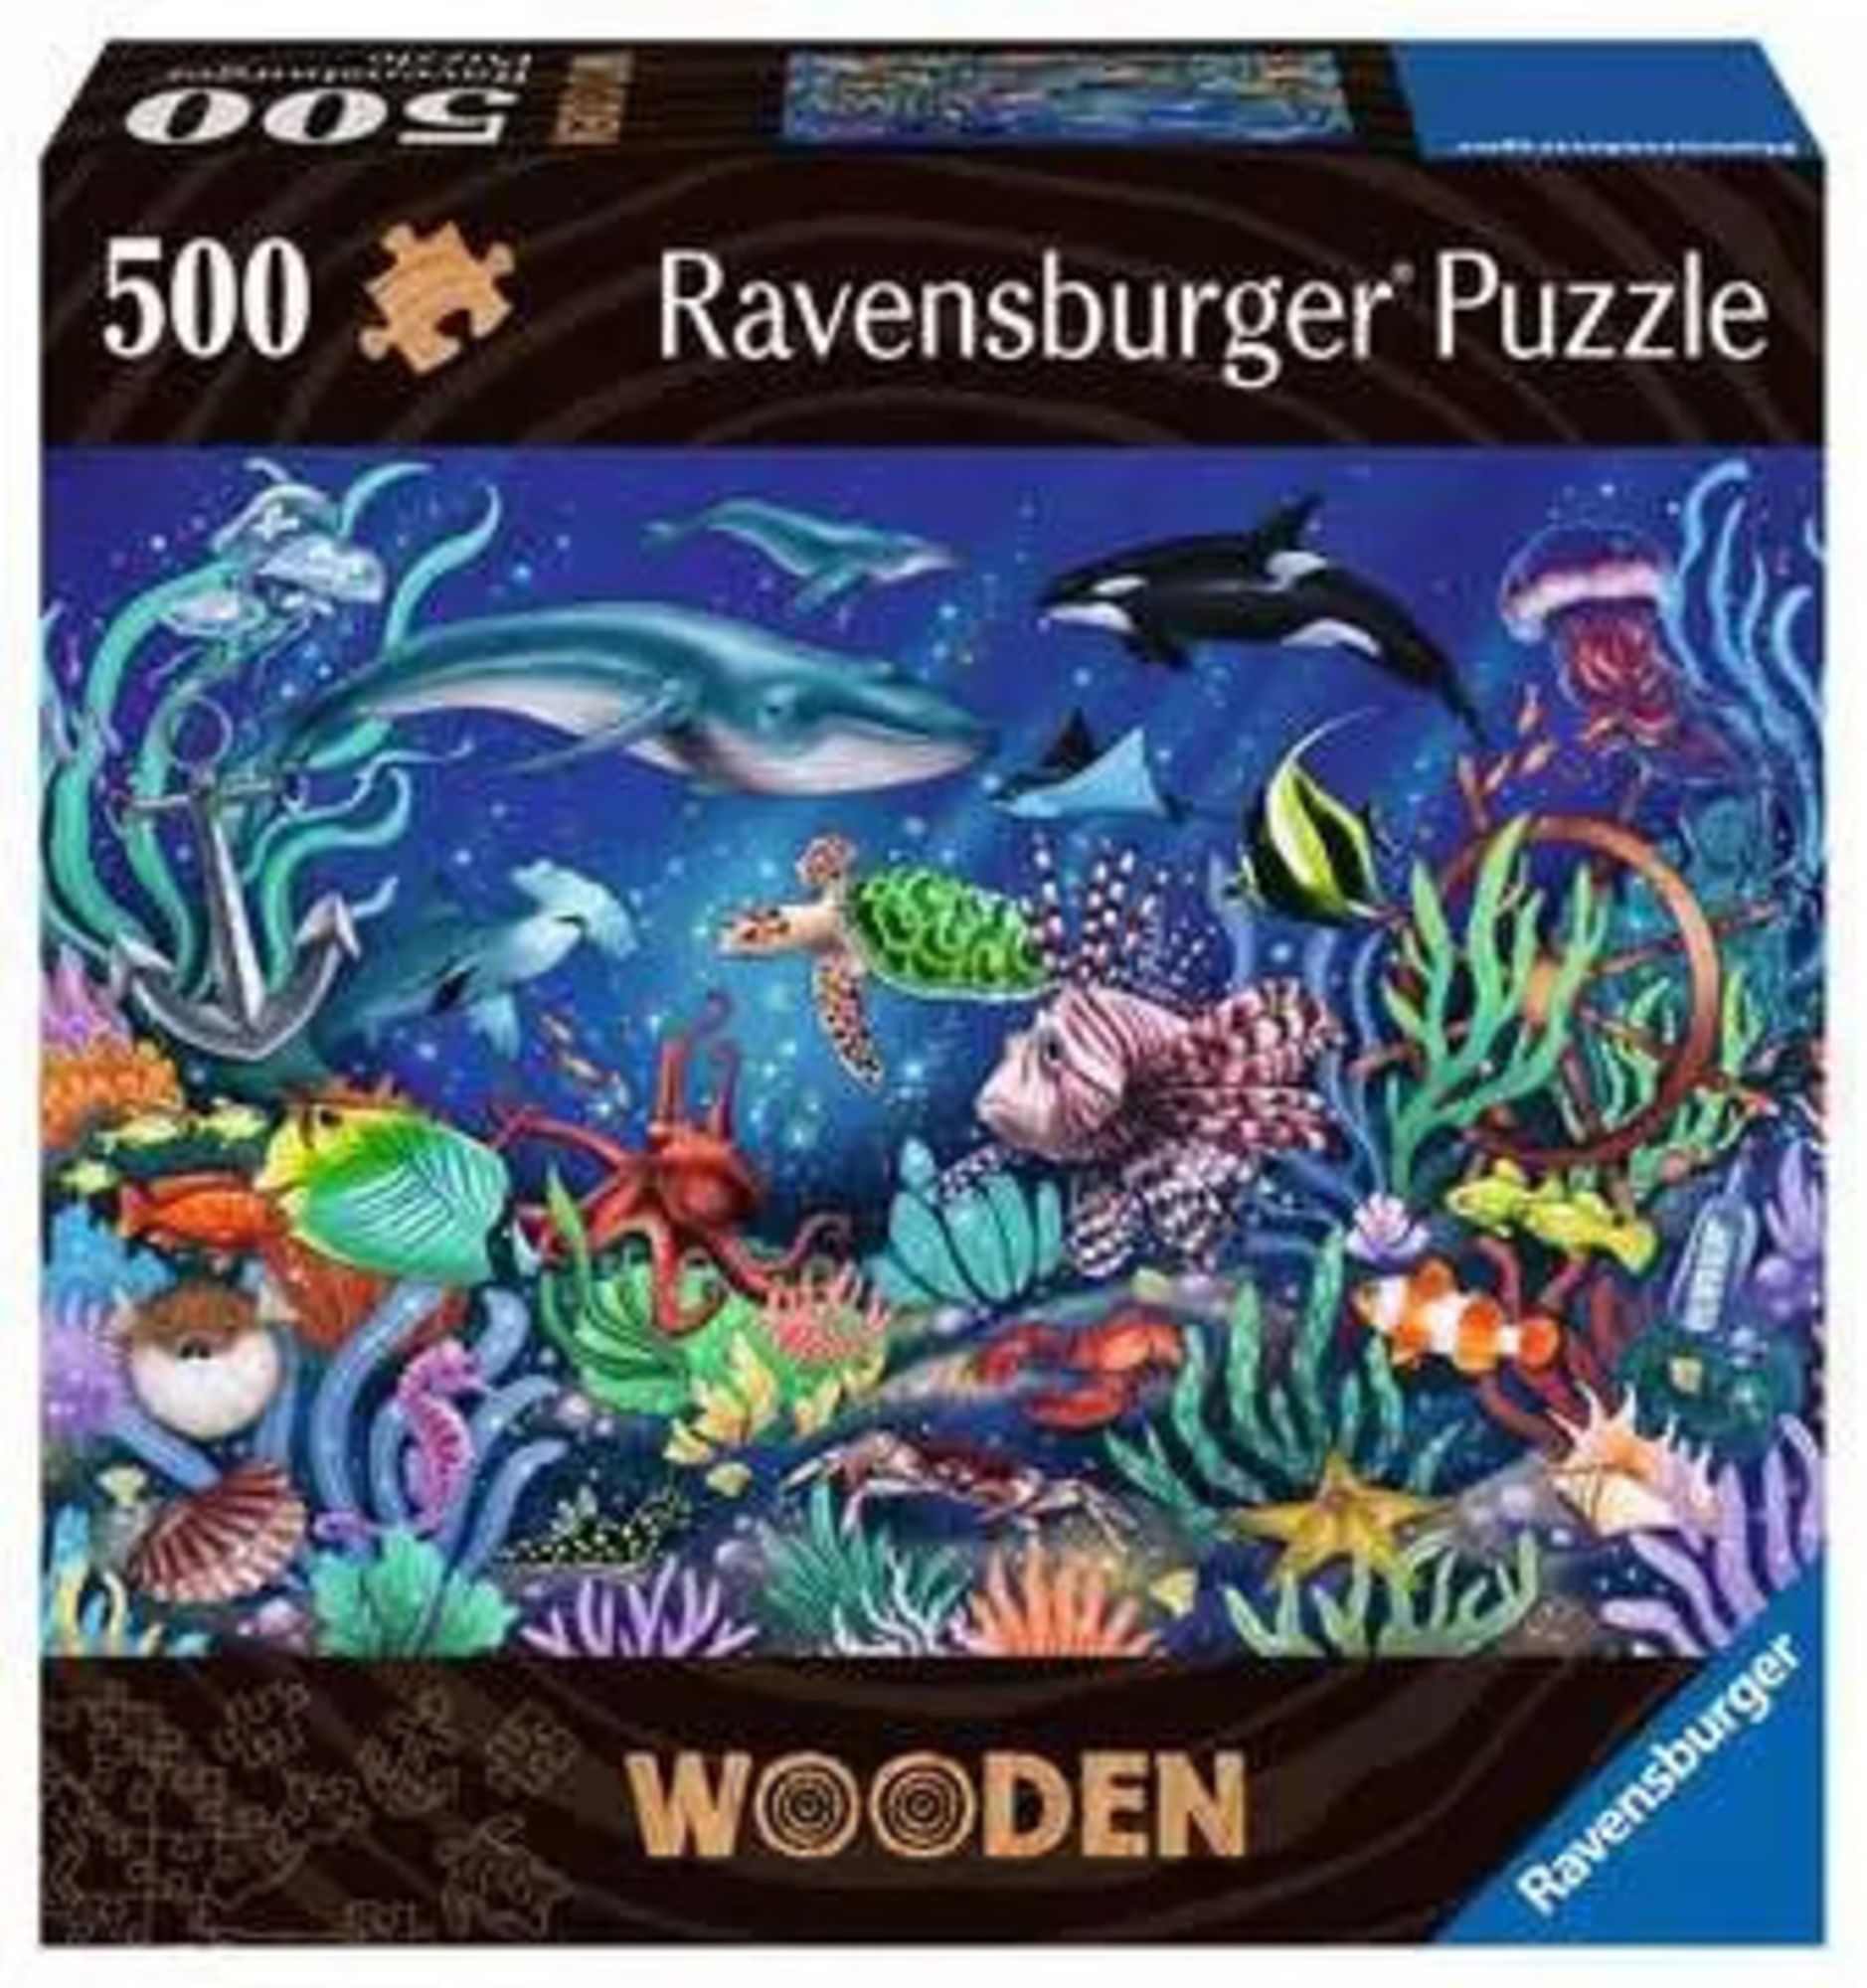 Ravensburger 17515 - Wooden, Unten im Meer, Holz-Puzzle inkl. 40 Whimsies,  500 Teile\' kaufen - Spielwaren